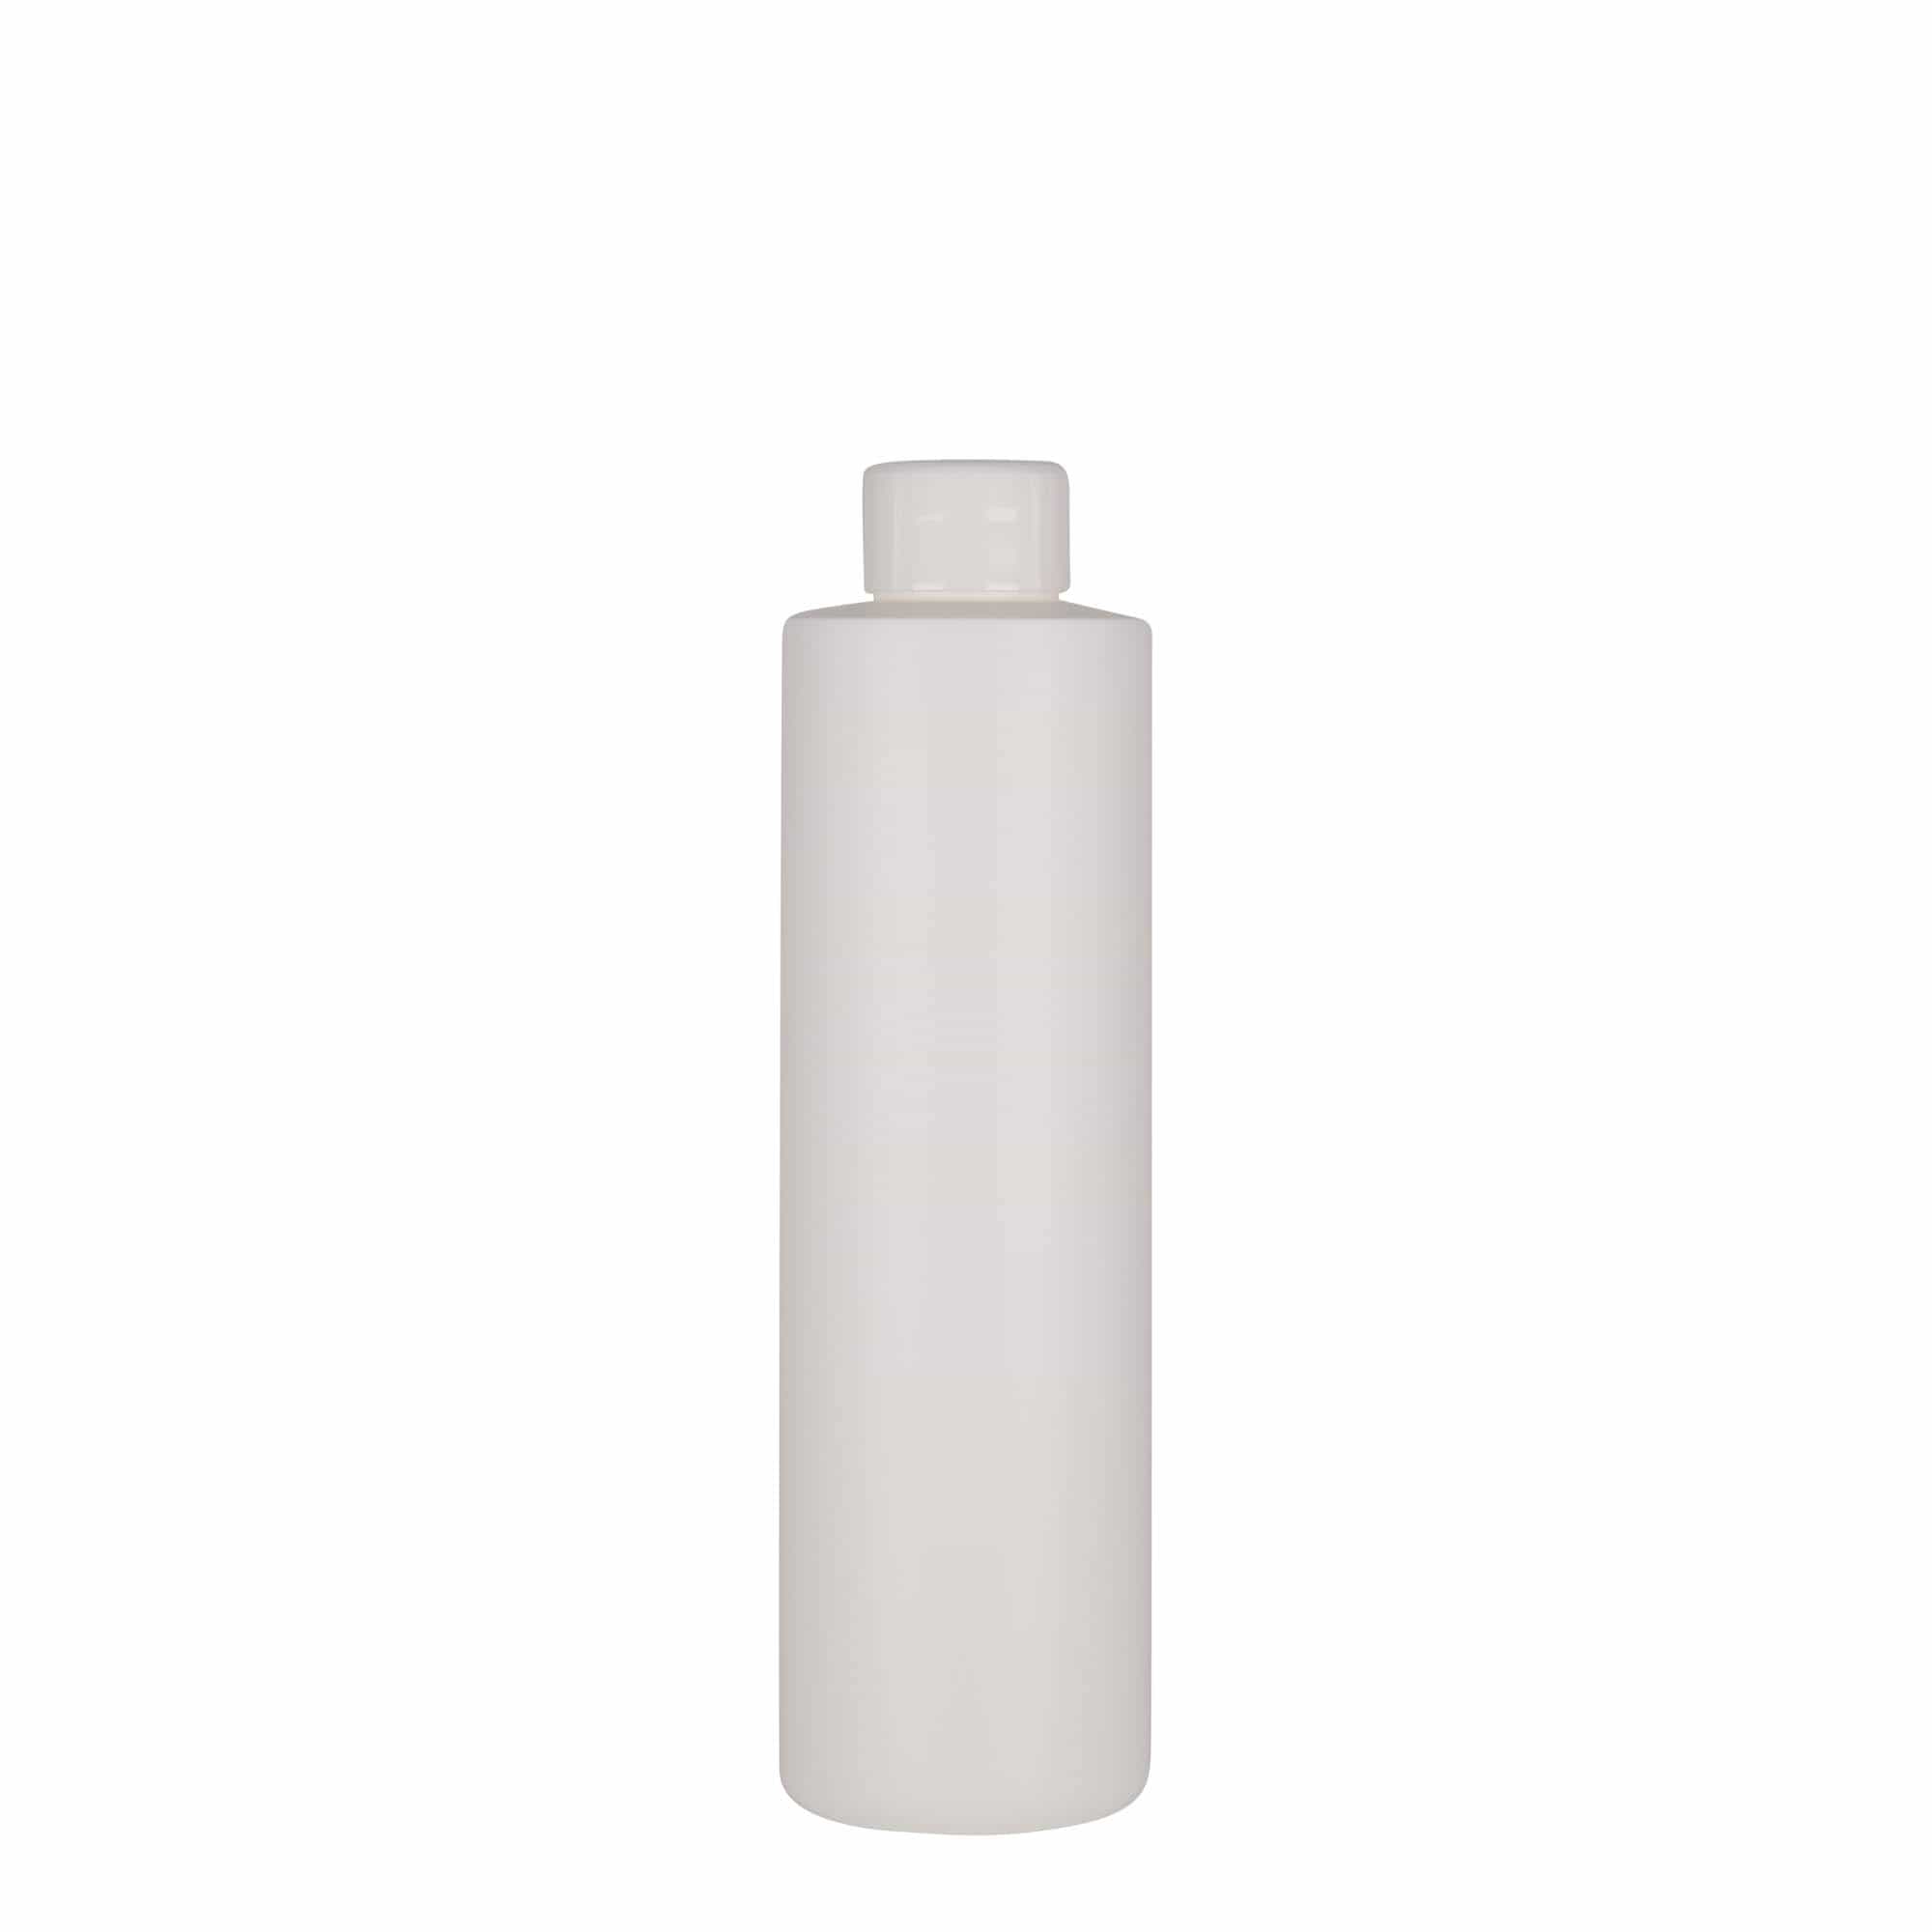 250 ml-es műanyag palack 'Pipe', Green HDPE, fehér, szájnyílás: GPI 24/410